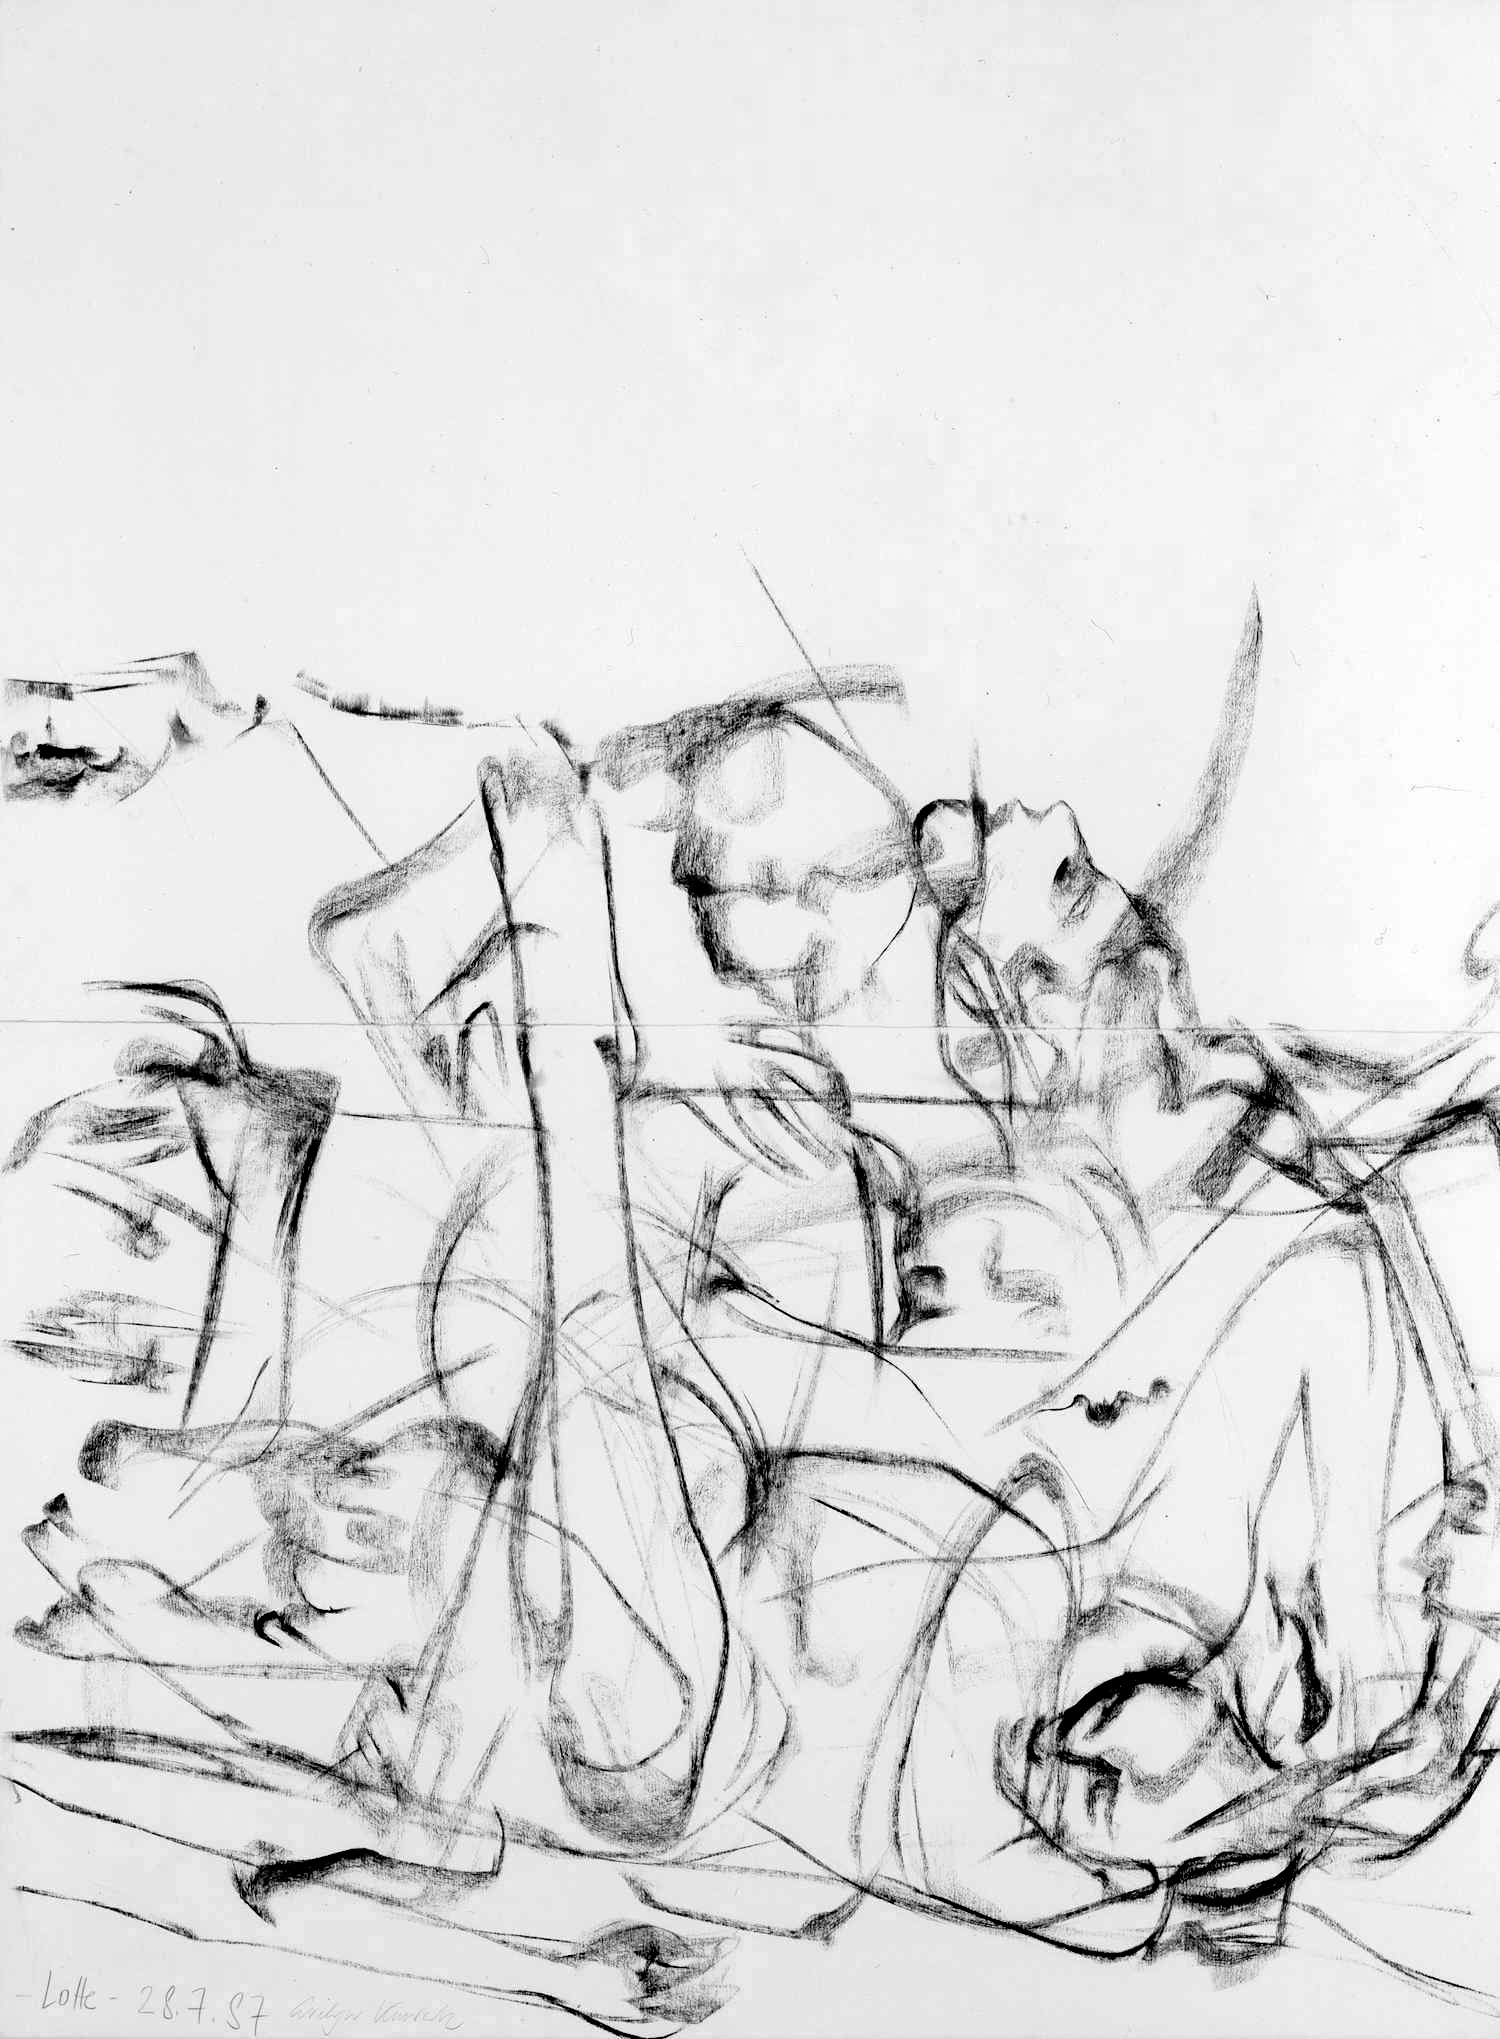 Slowmotion 1987, 160/120 cm, charcoal drawing / paper (Bütten)